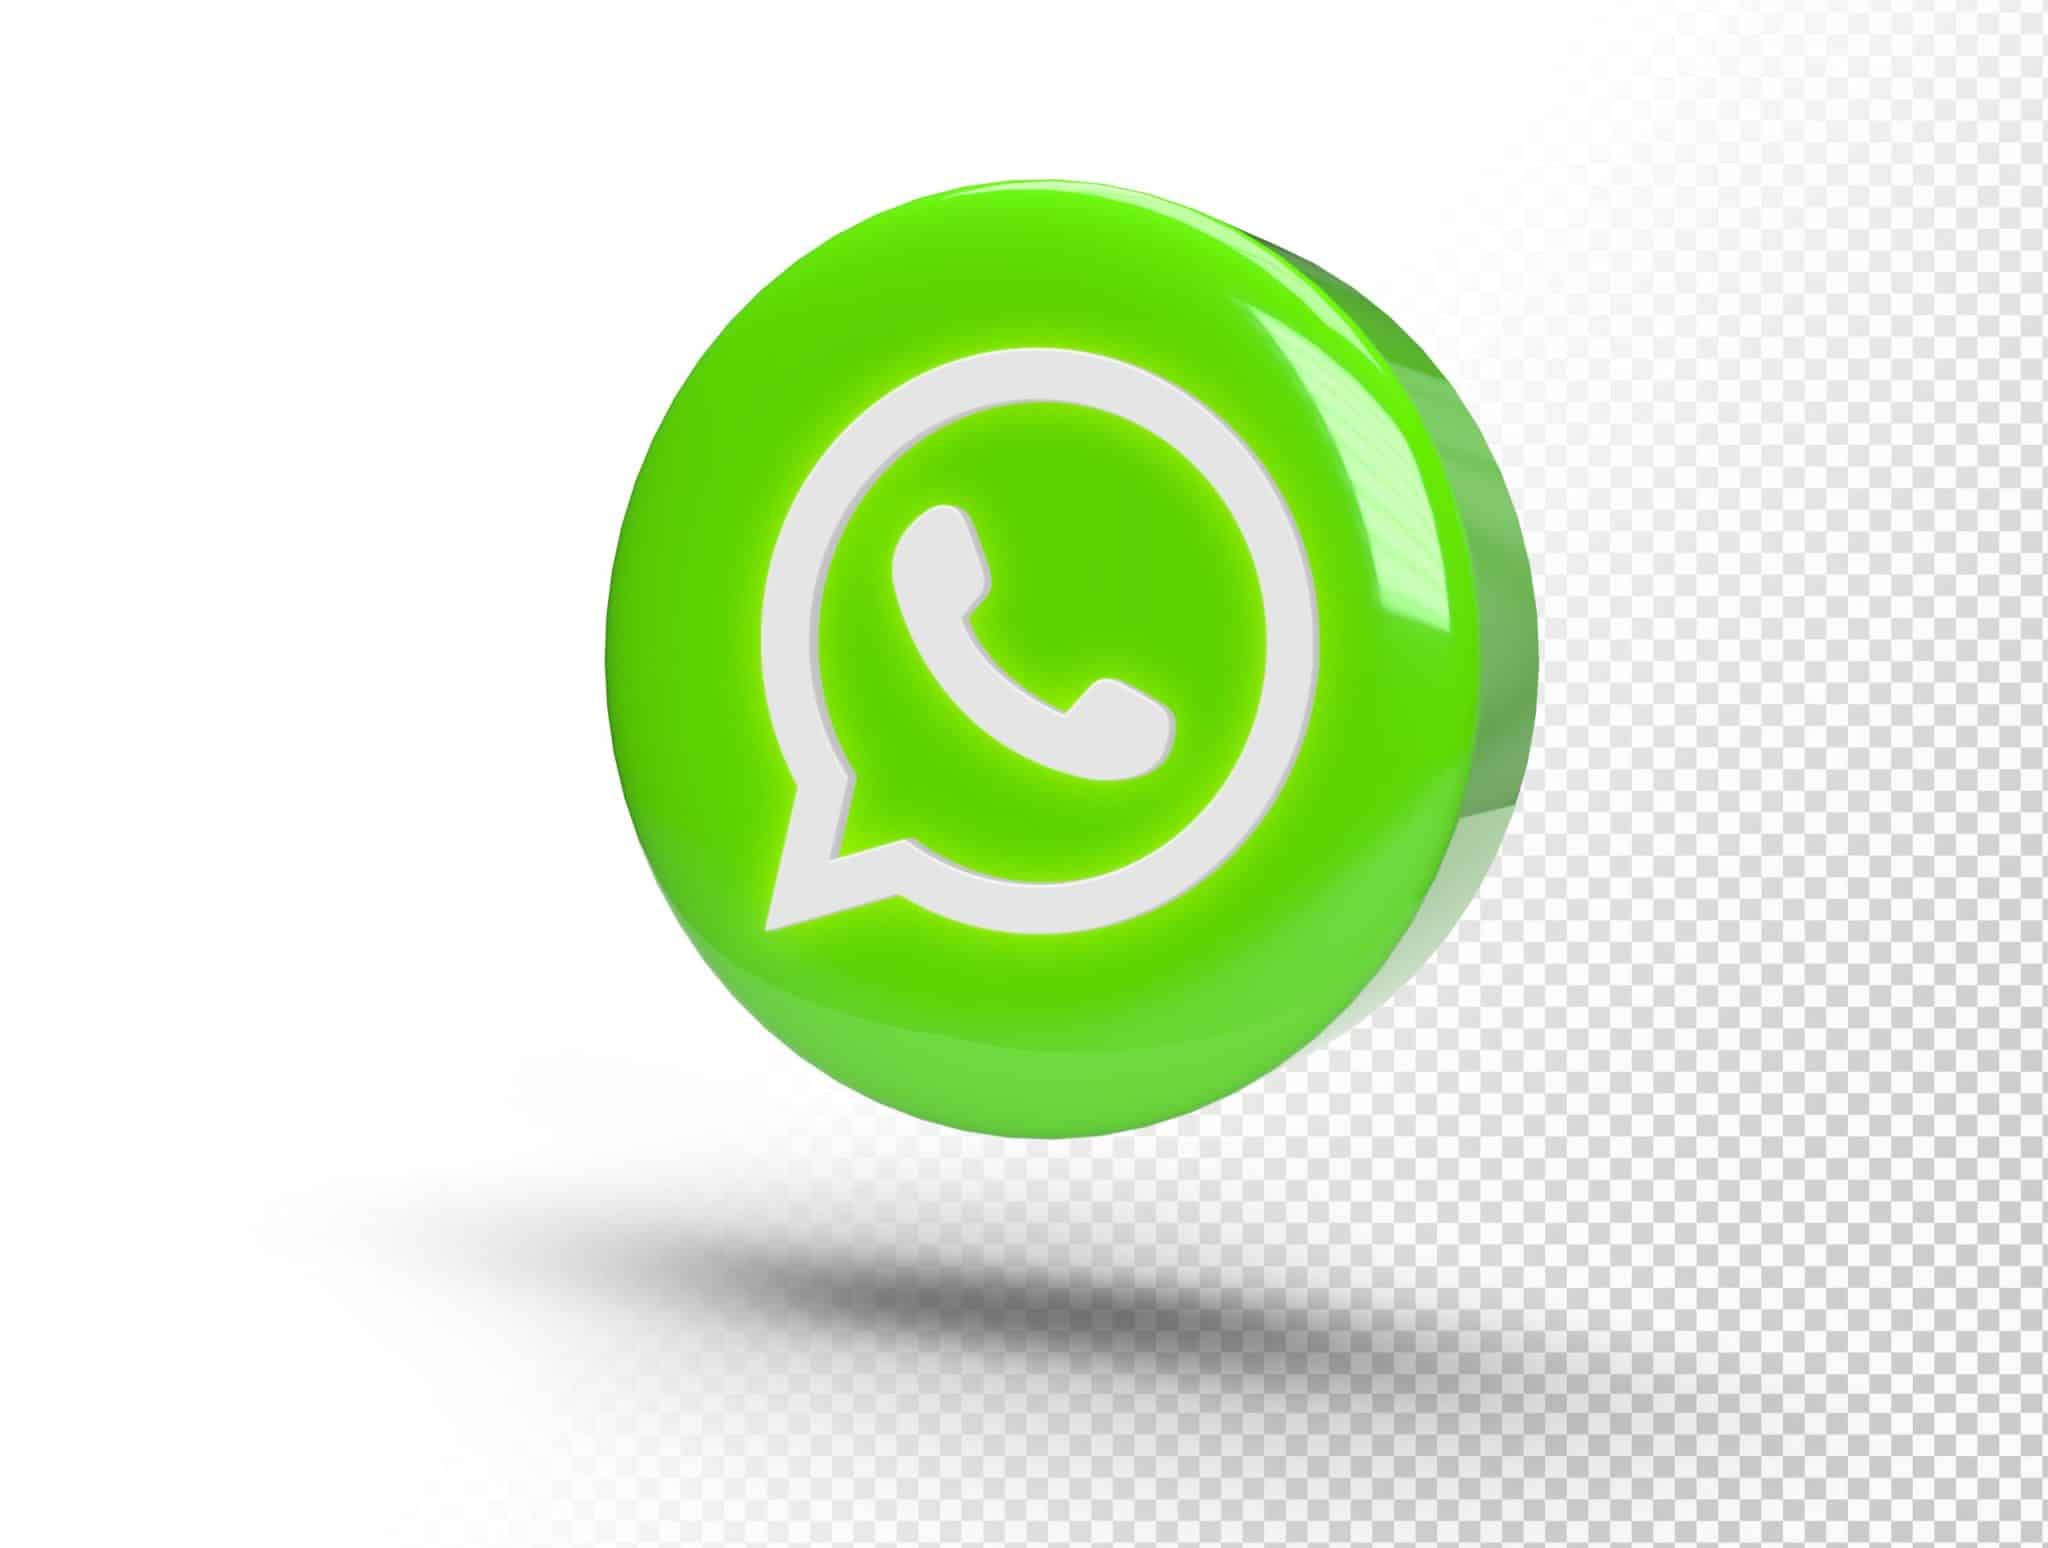 WhatsApp para empresas de construção: como utilizar para enviar atualizações sobre a obra aos clientes